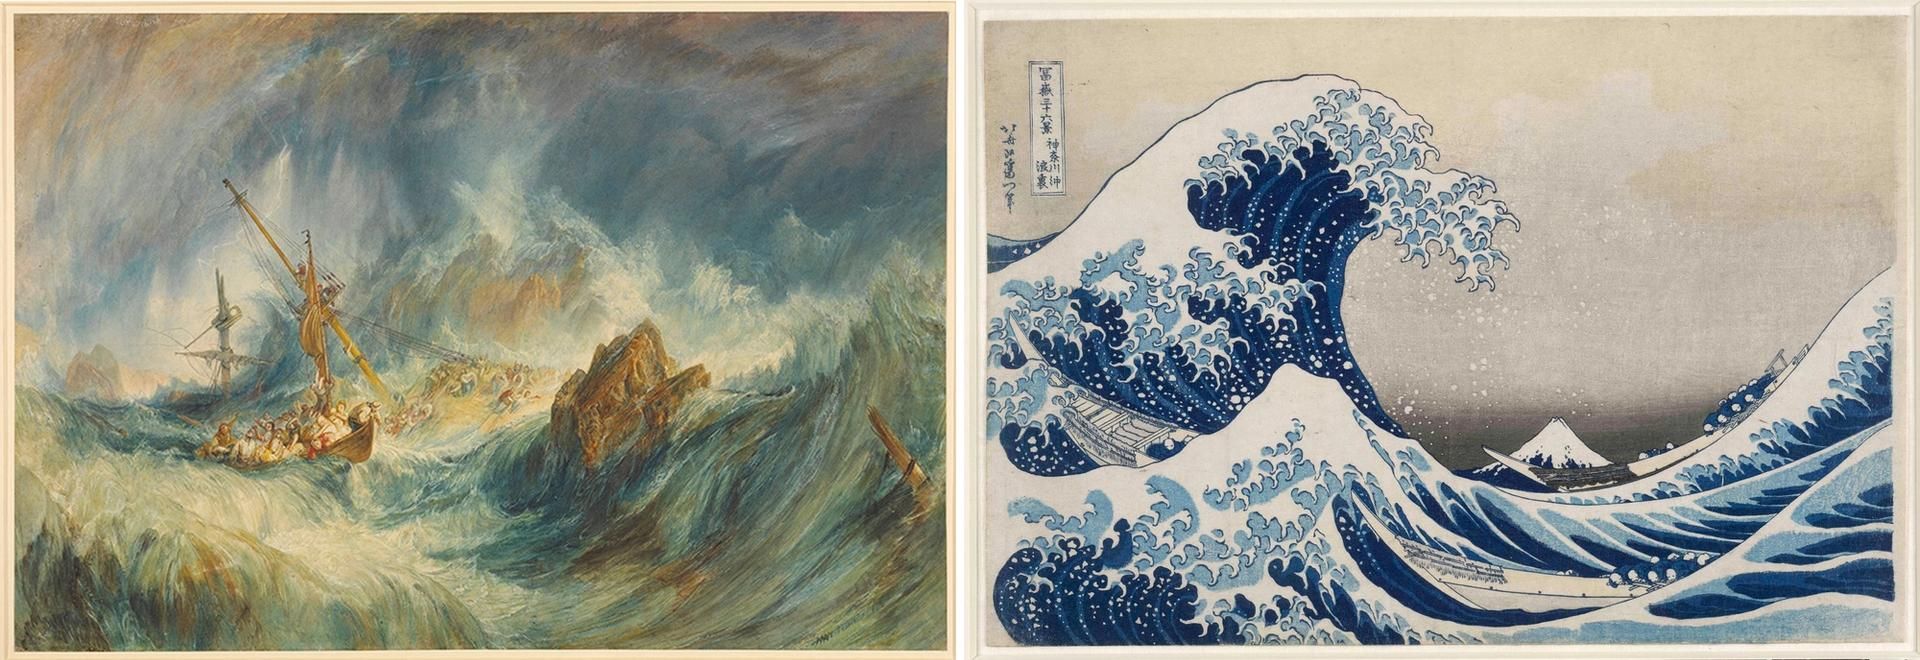 המוזיאון הבריטי הפך גם את ,Shipwreck (1823)של ג'וזף מלורד וויליאם טרנר וגם את The Great Wave (1831) של הוקוסאי ל-NFTs.

© 2021, הנאמנים של המוזיאון הבריטי